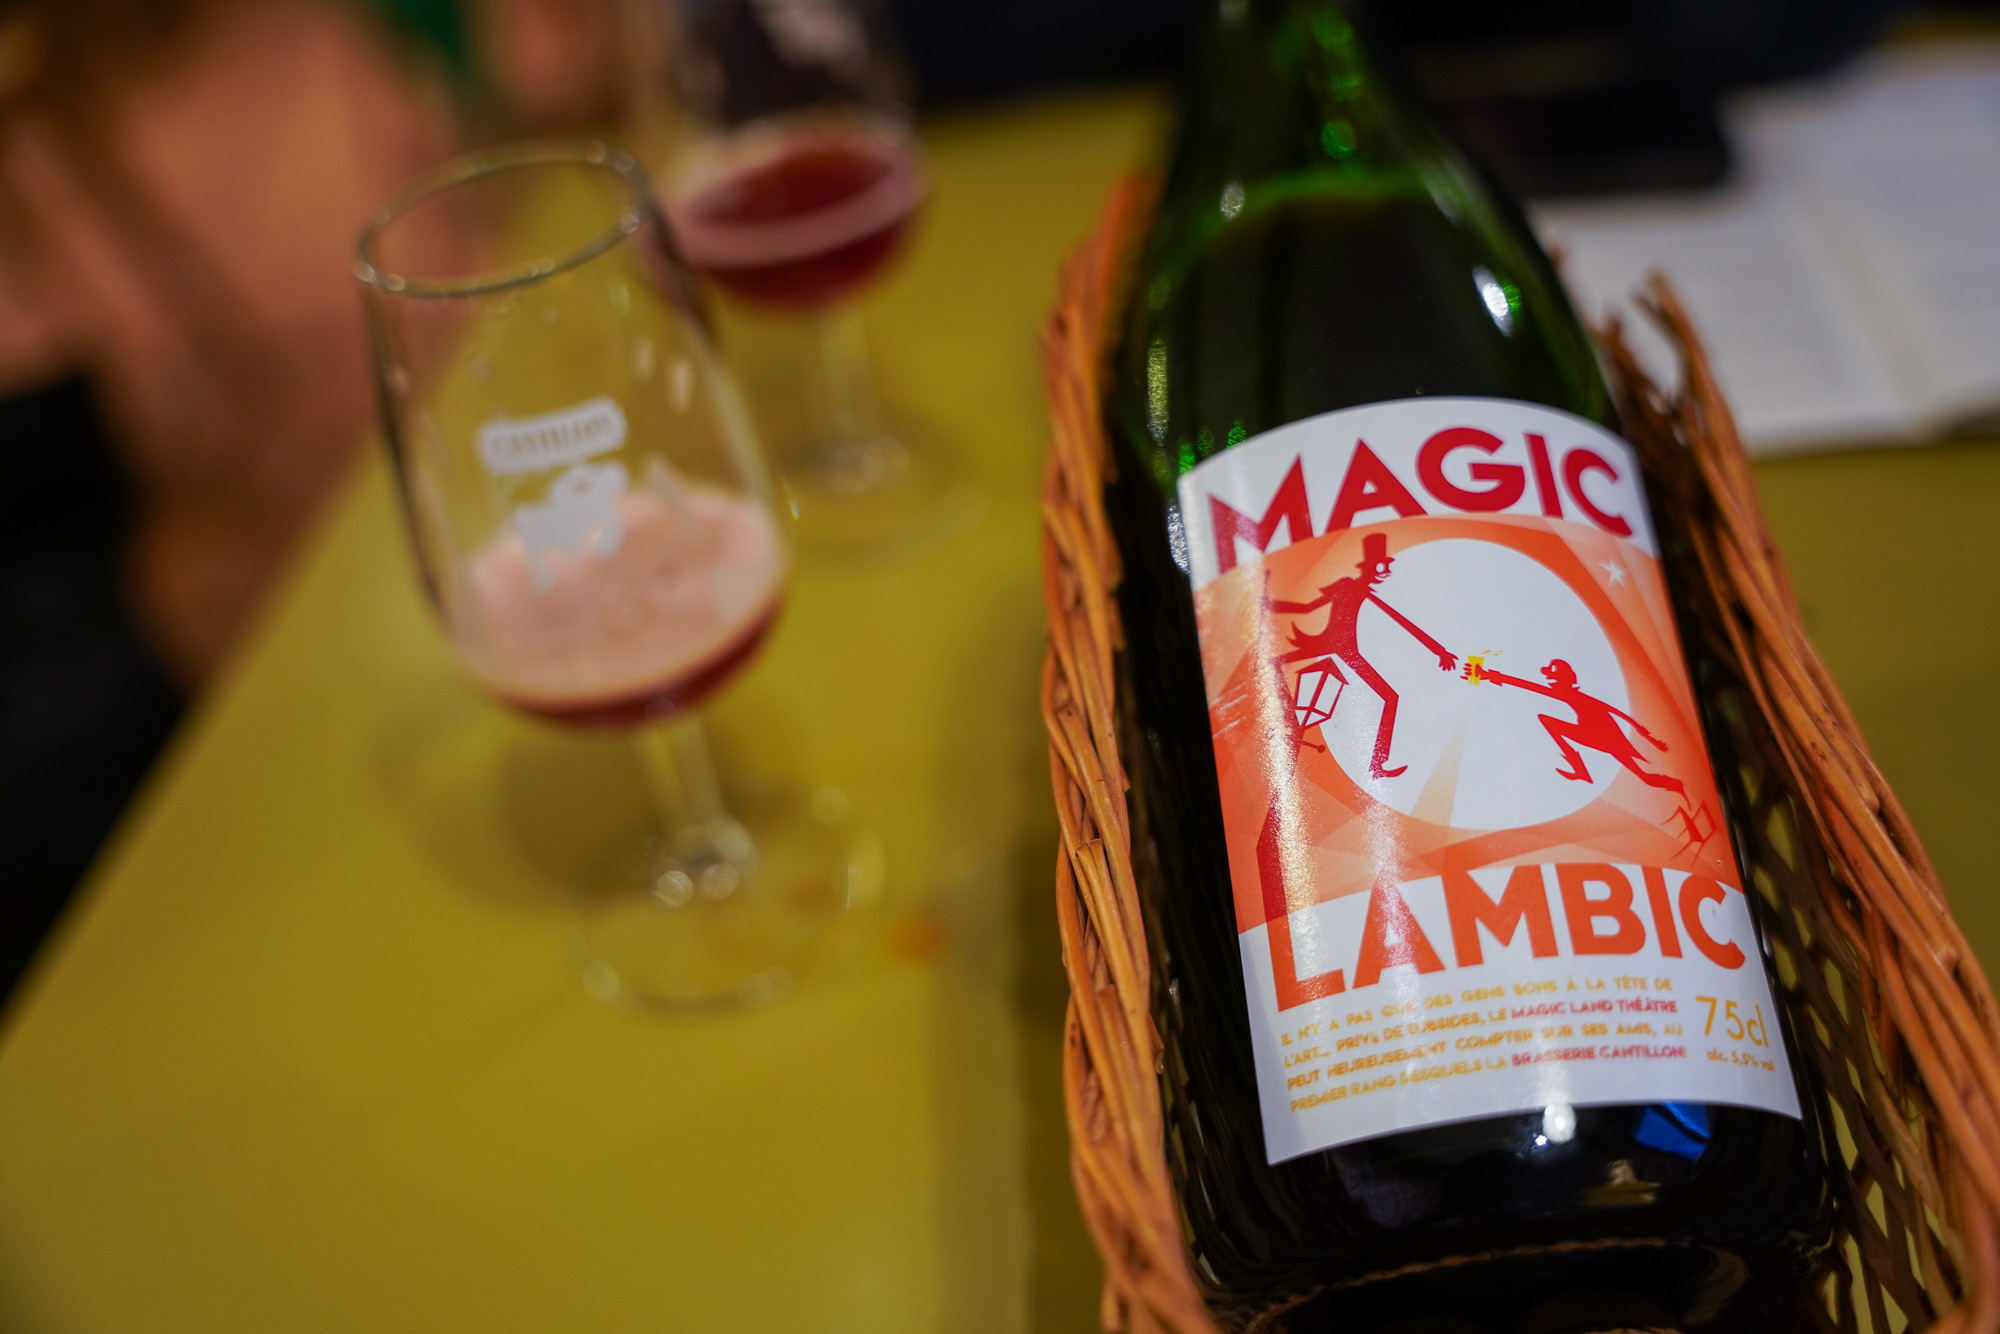 Magic Lambic from Cantillon